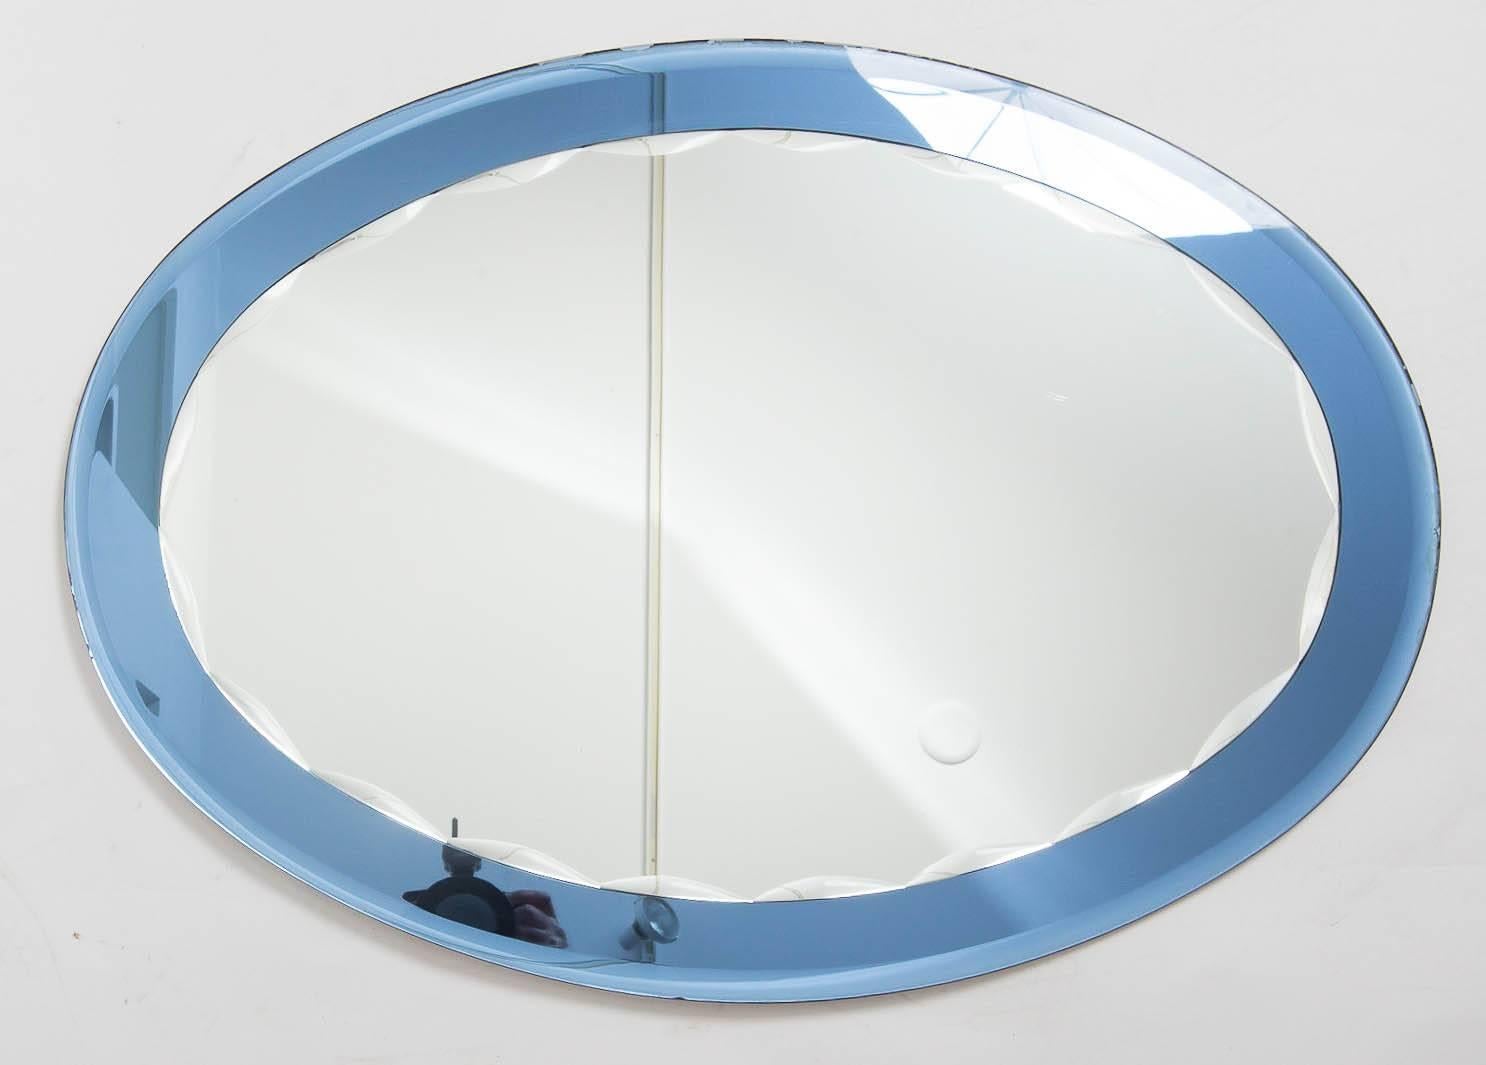 Glass Italian mirror, blue is deeper in person.